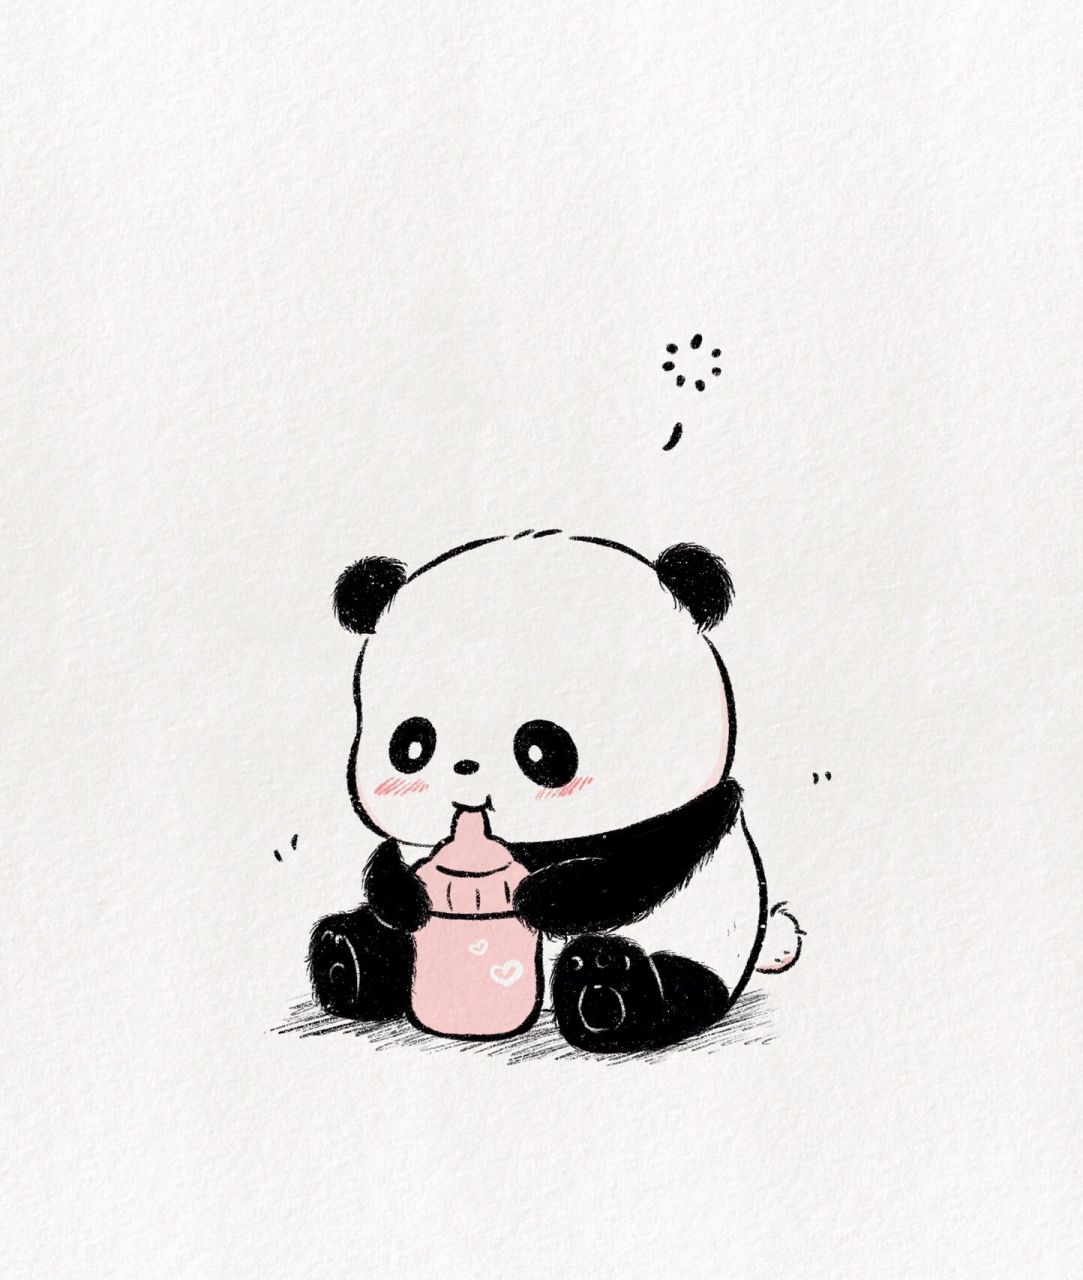 大熊猫简笔画简单萌萌图片